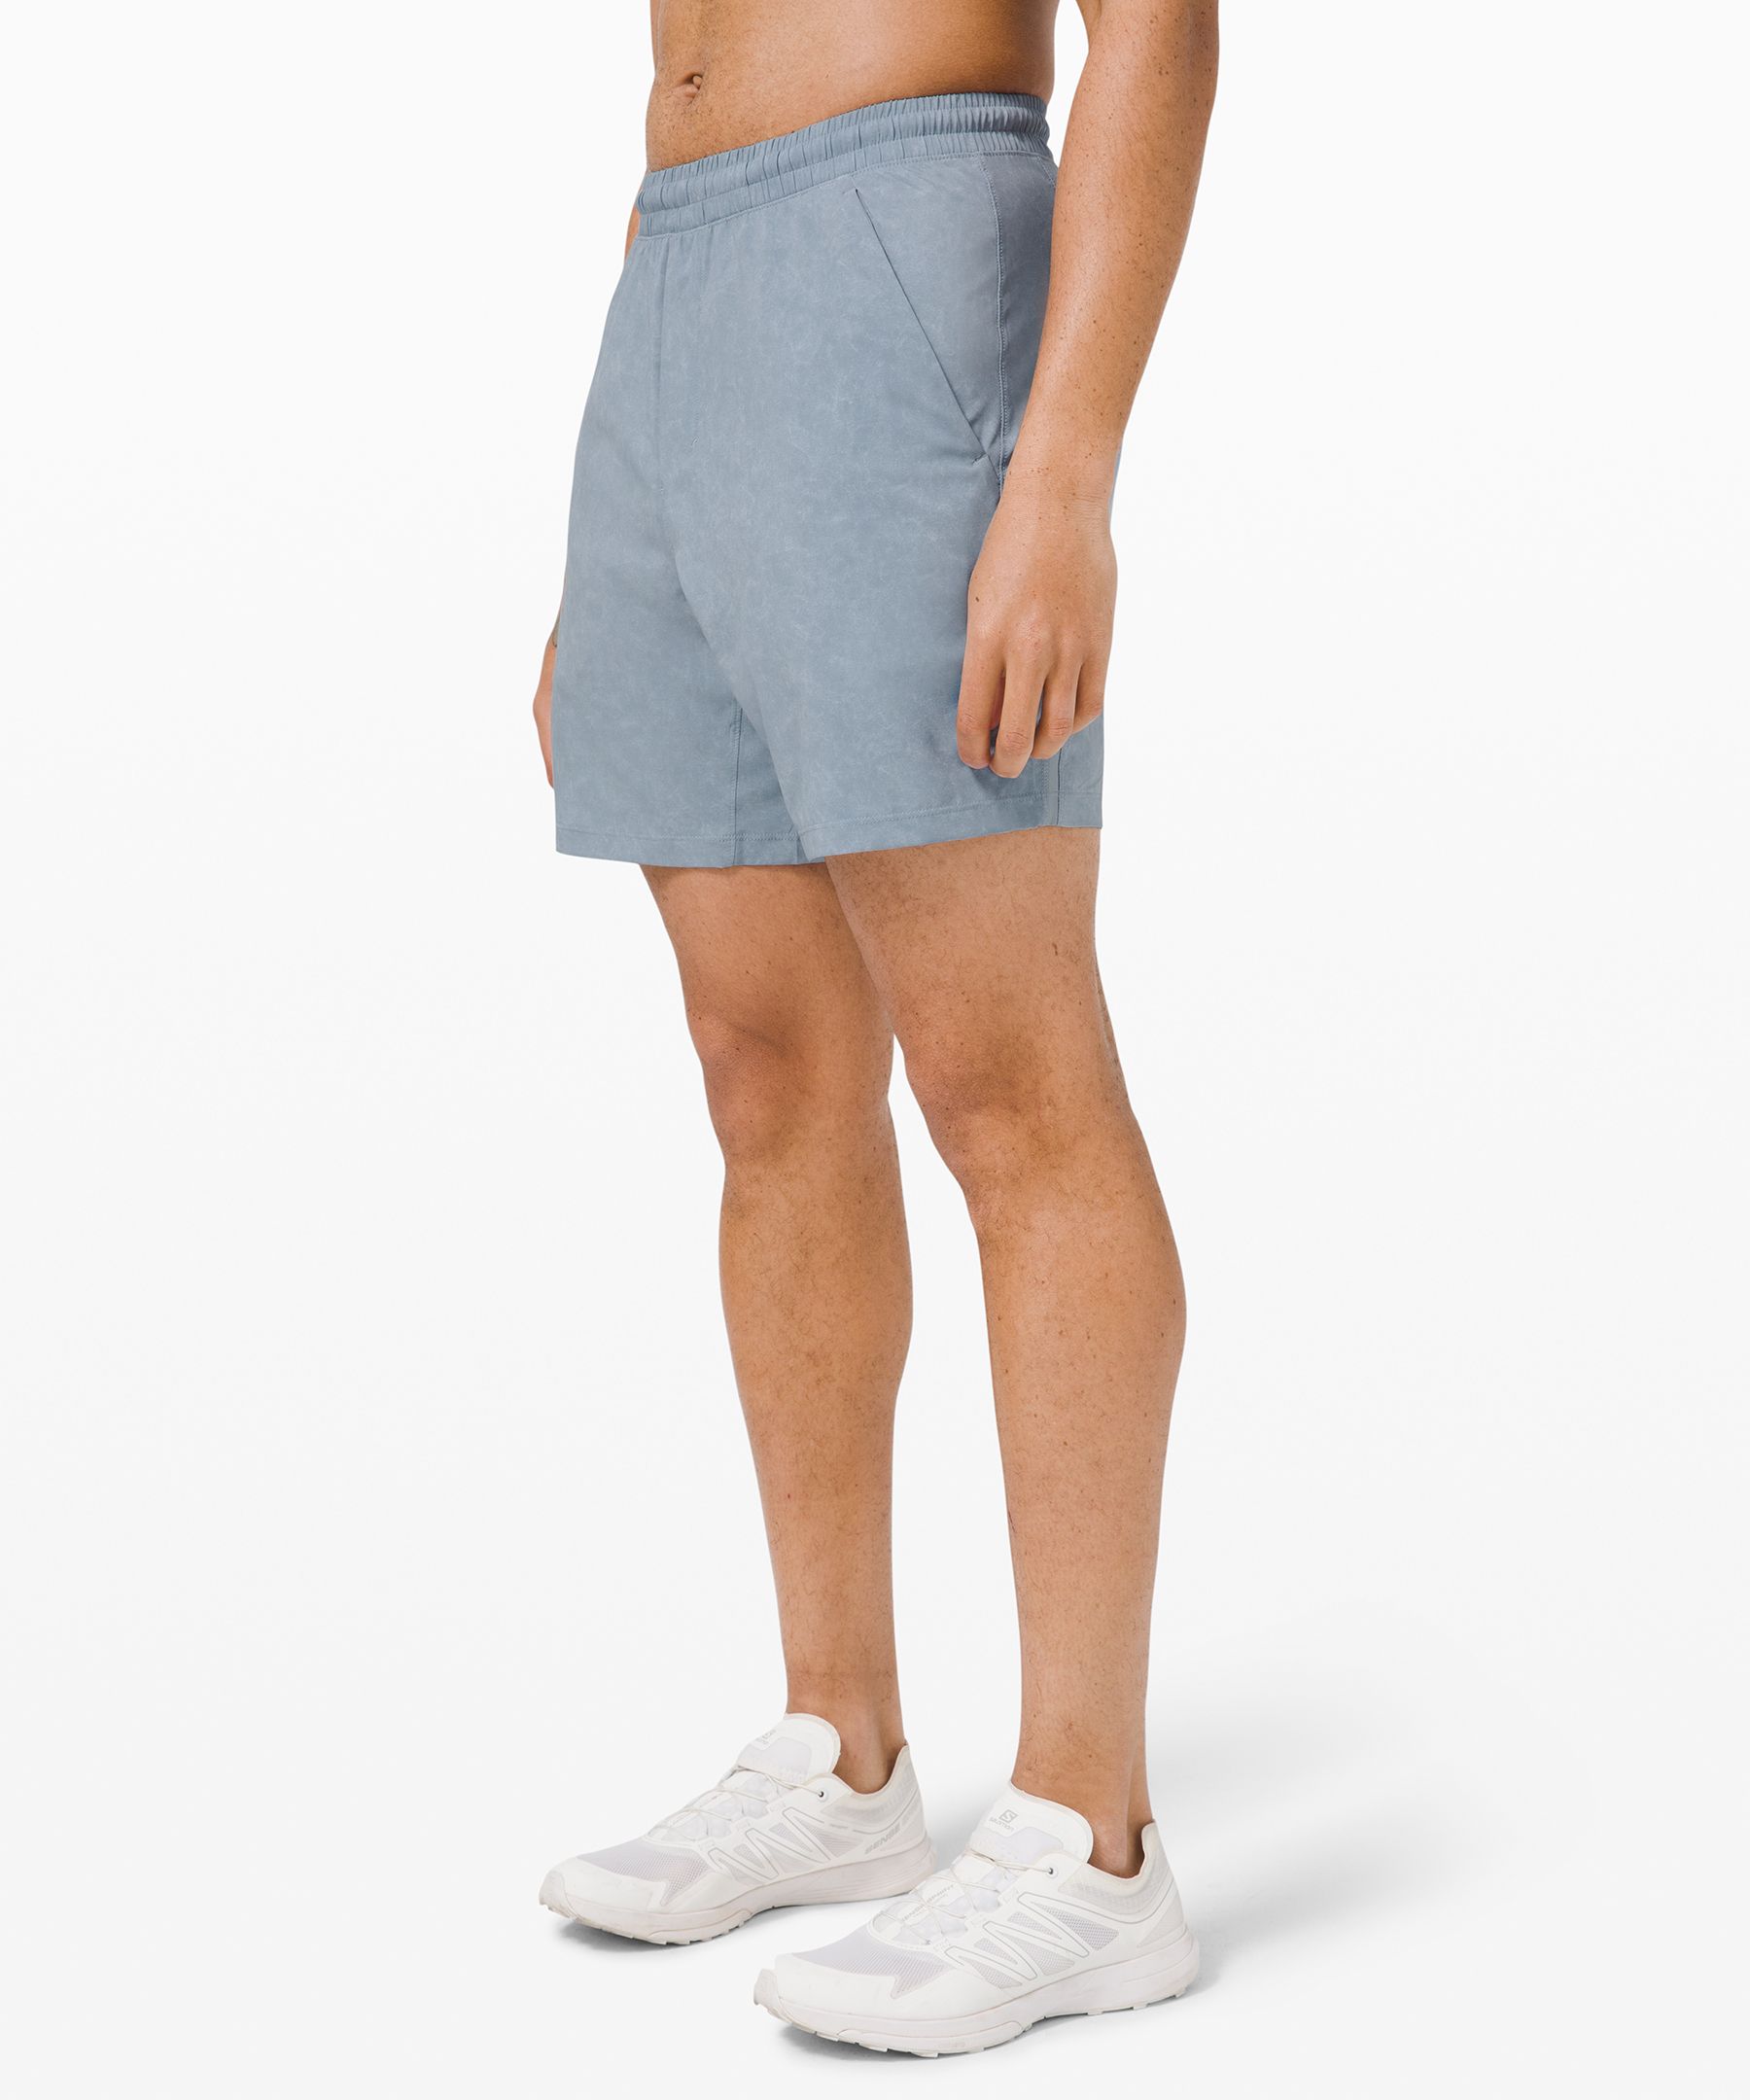 lululemon men's 7 inch shorts